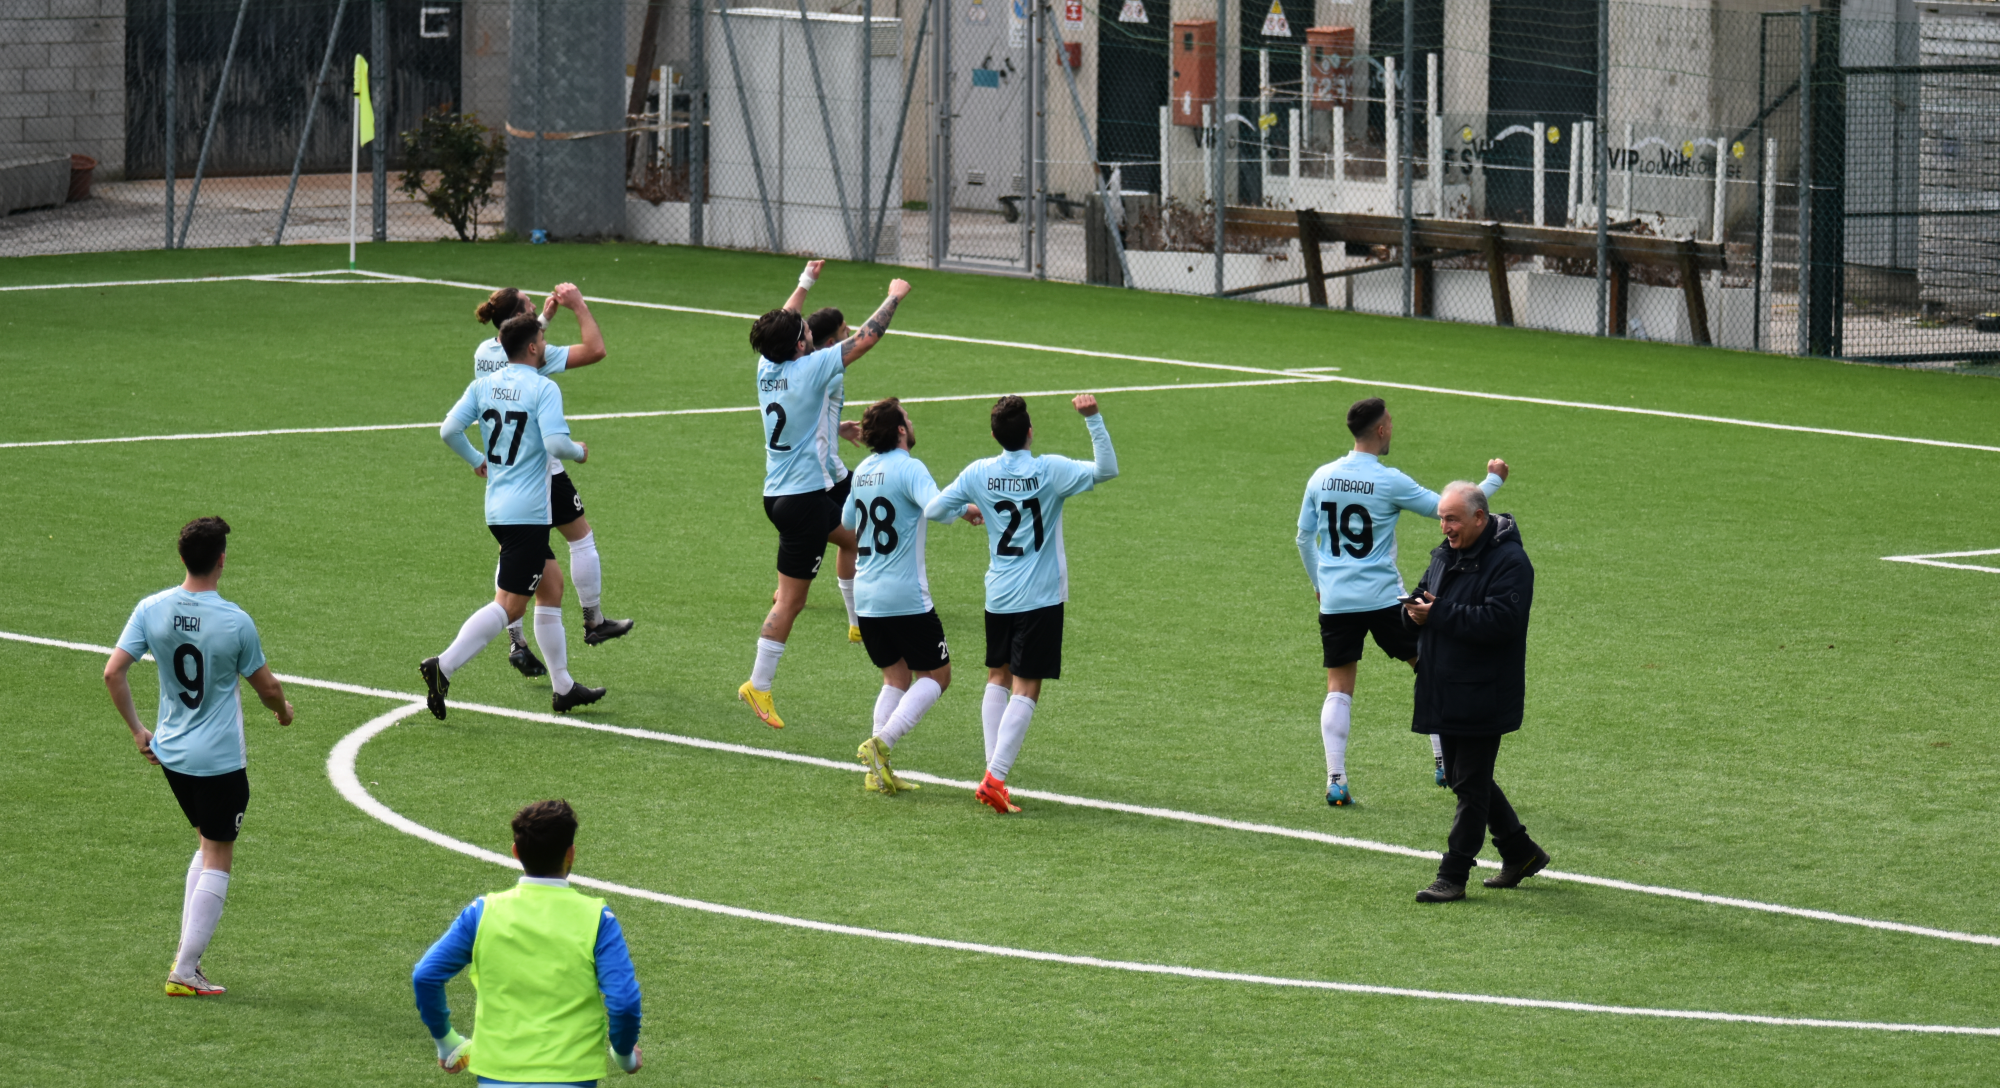 Calcio San Marino, il Tre Penne affronterà una squadra islandese in Champions League